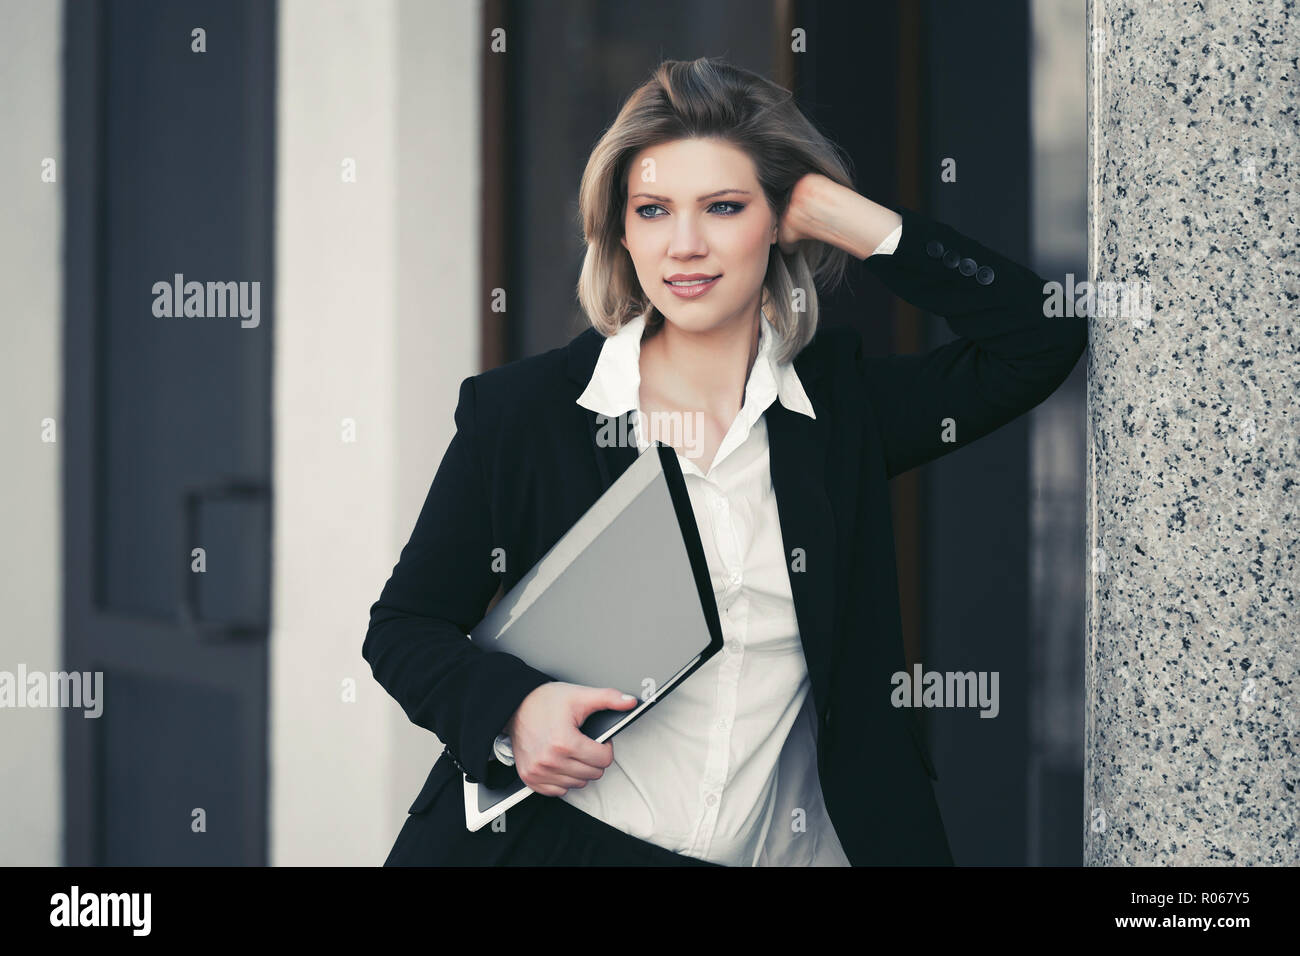 Happy young business woman avec un dossier d'un immeuble de bureaux. Modèle de mode Élégant blazer noir en piscine Banque D'Images